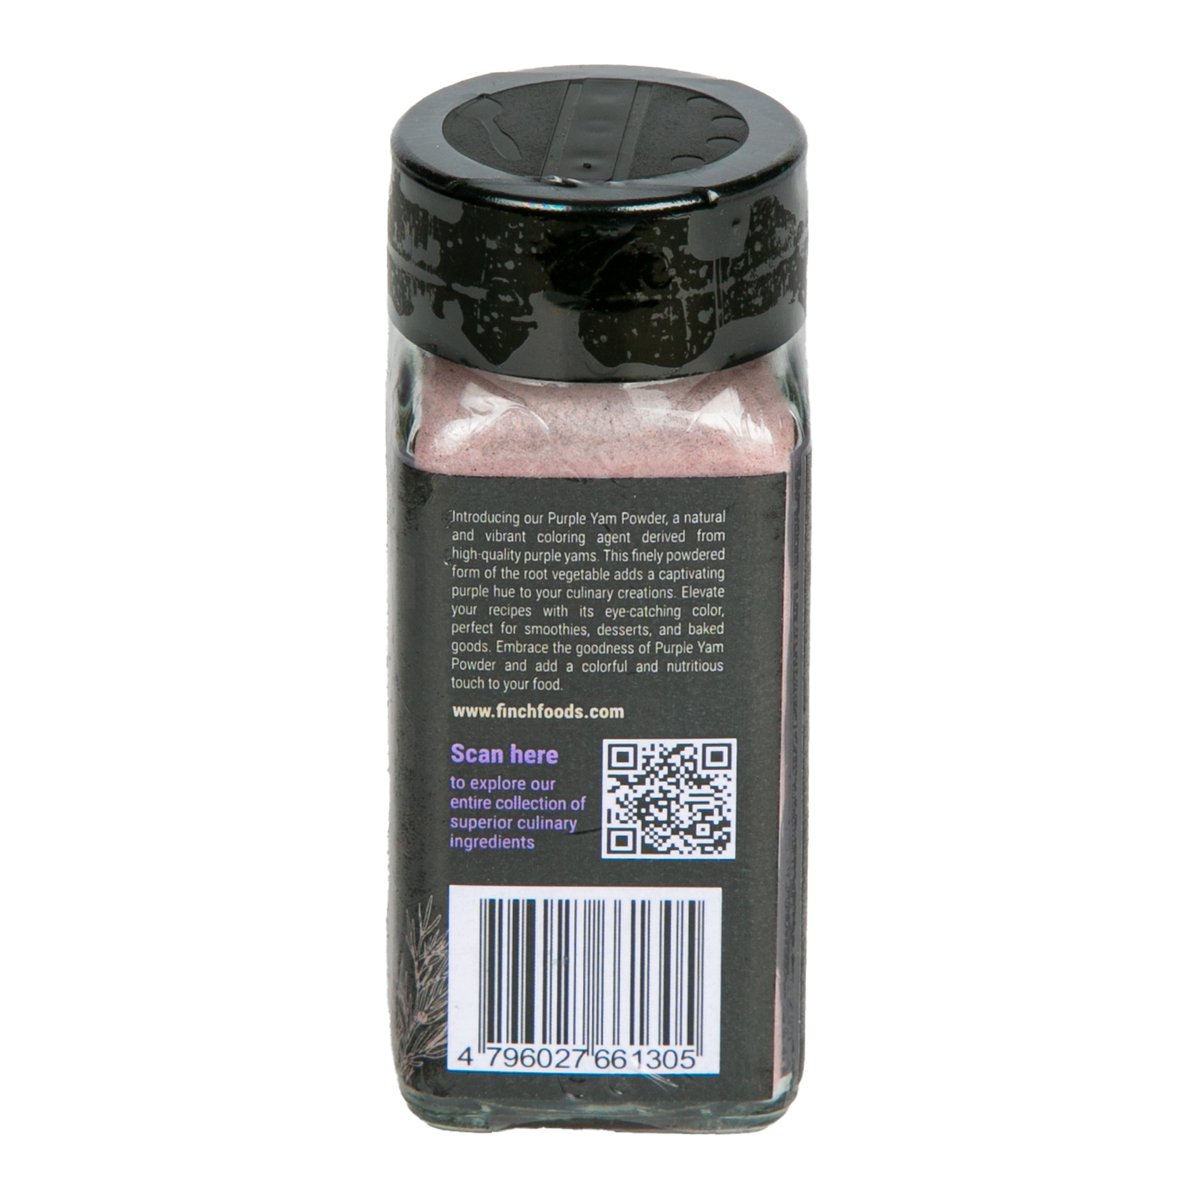 Finch Purple Yam Powder 75 g